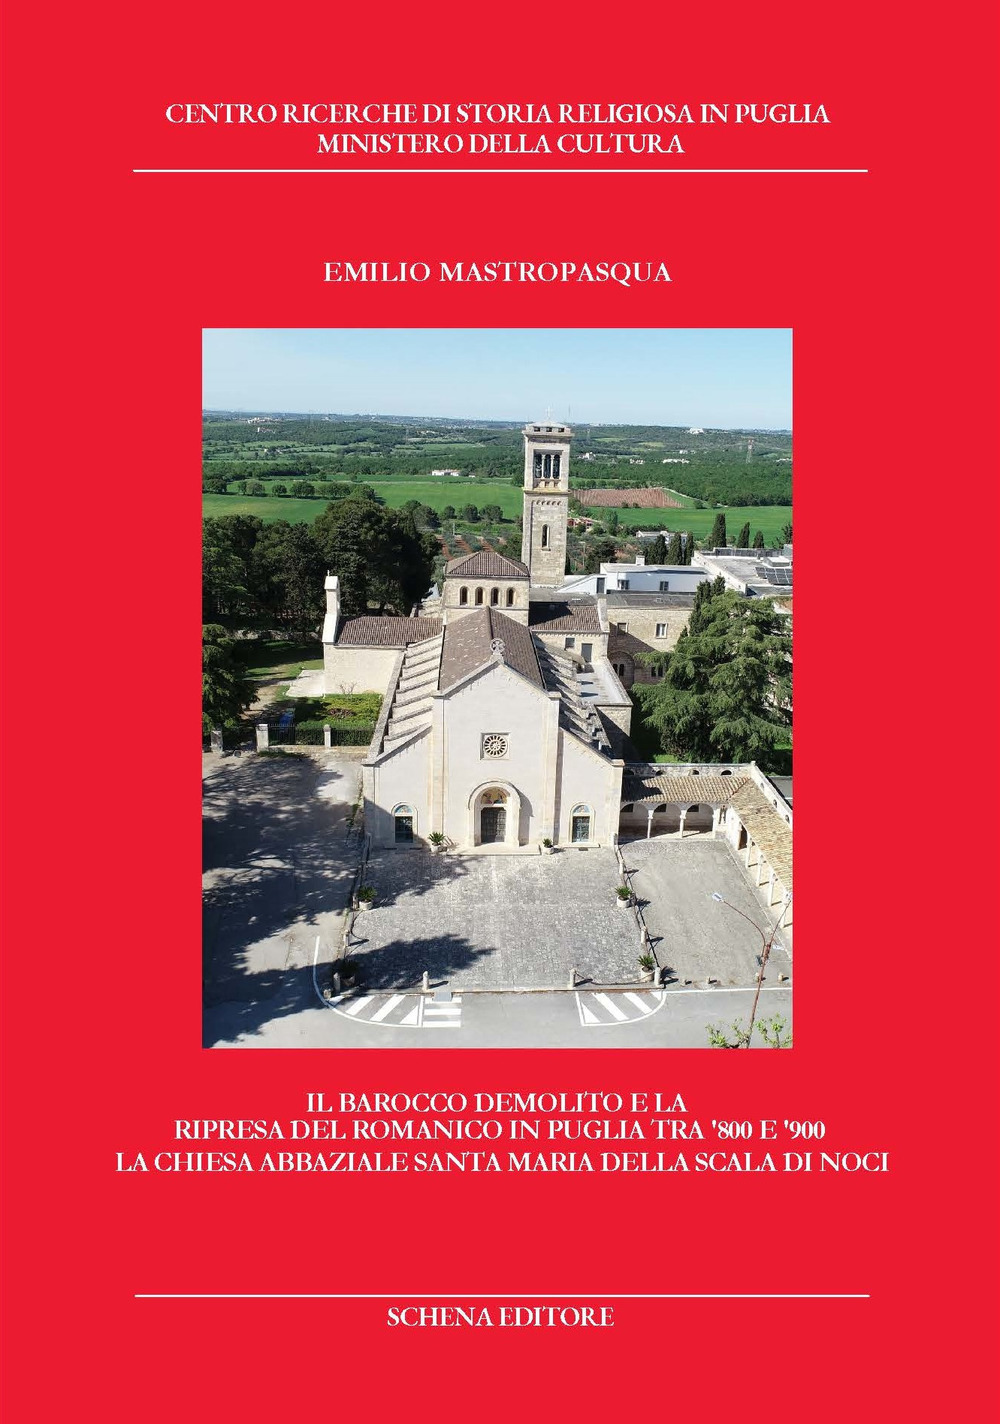 Il Barocco demolito e la ripresa del Romanico in Puglia tra '800 e '900. La chiesa abbaziale Santa Maria della Scala di Noci